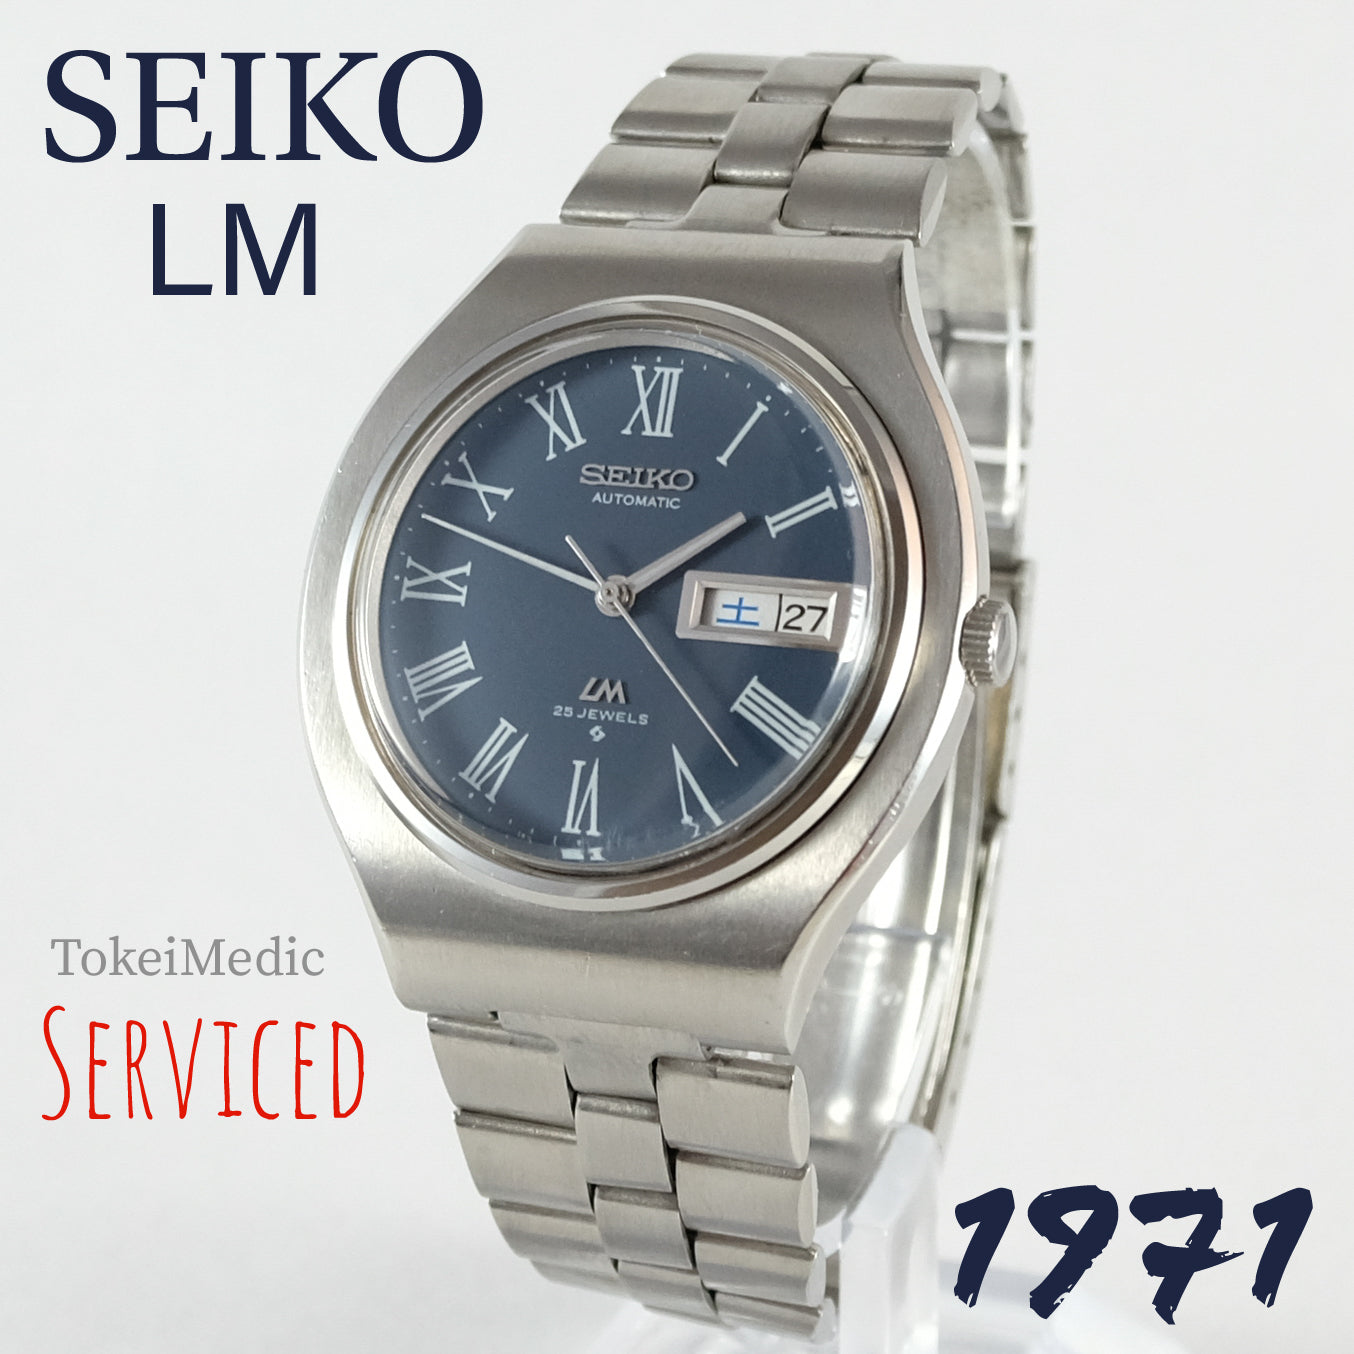 1971 Seiko LM 5606-7120